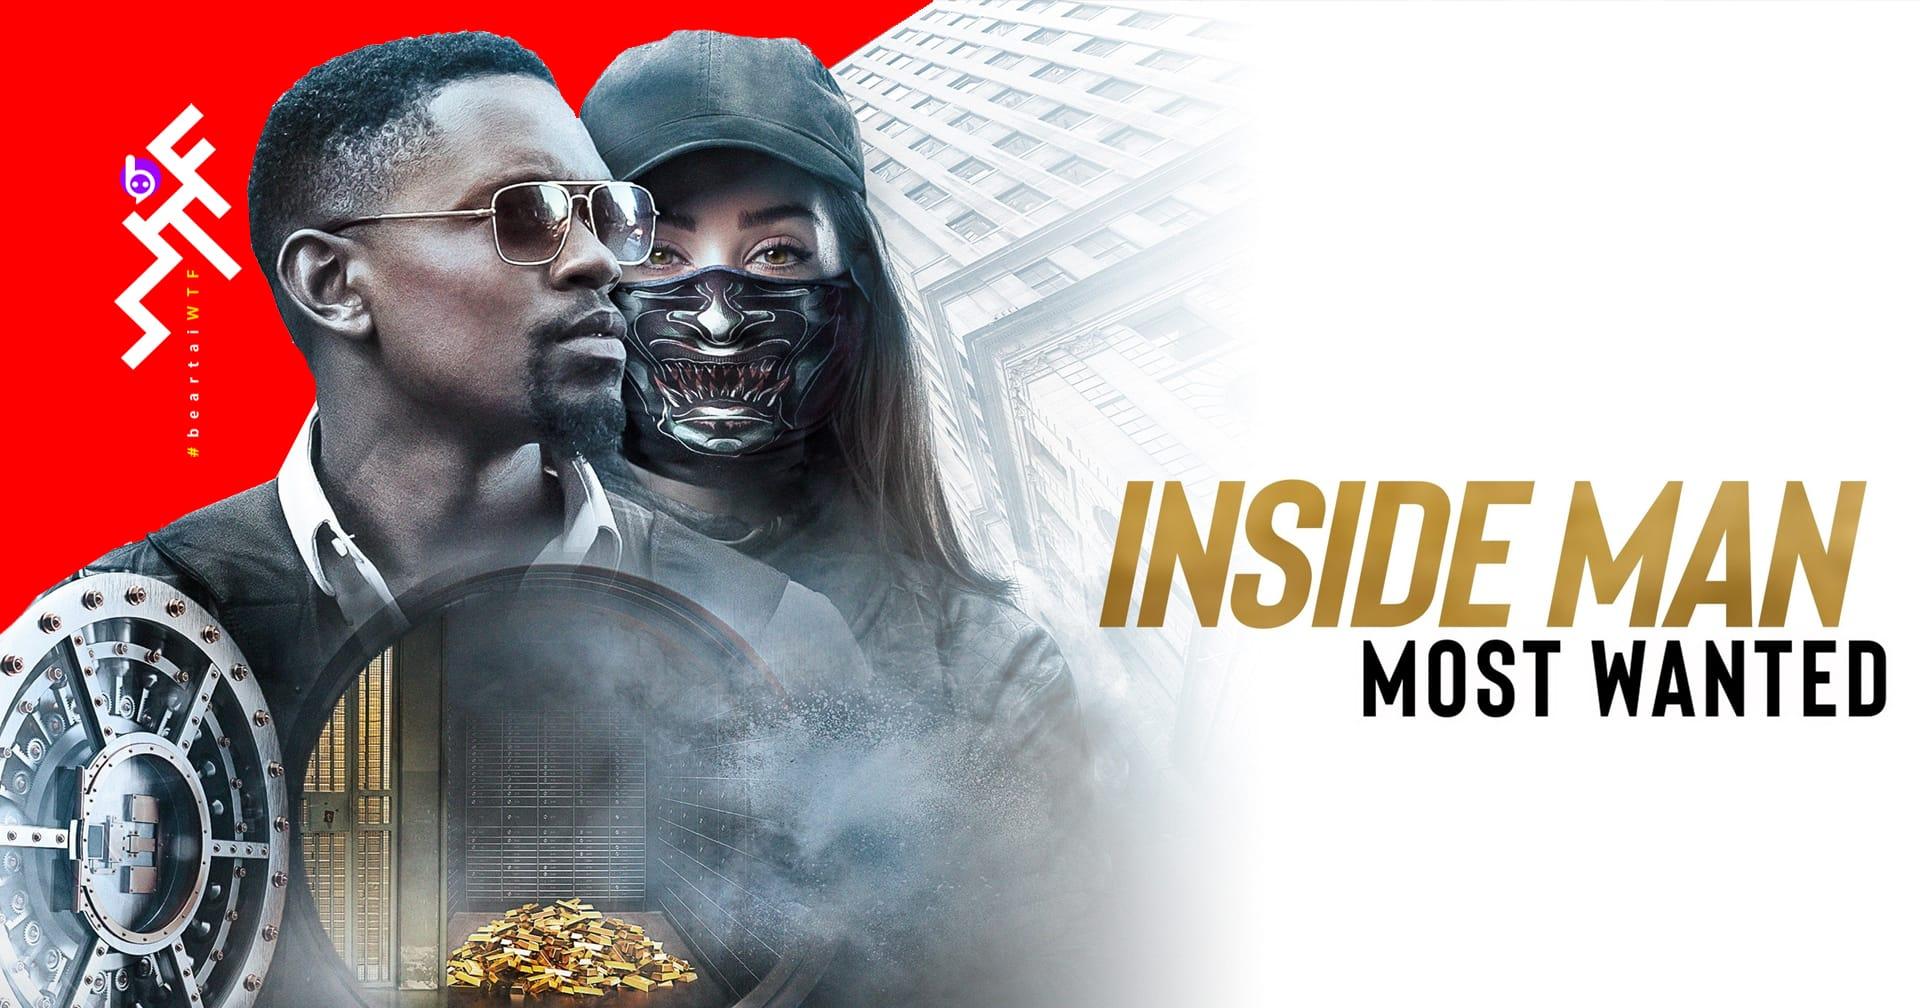 Inside Man: Most Wanted ภาคต่อหนังปล้นธนาคารสุดล้ำปี 2006 ที่ไม่รู้จะมีภาคต่อทำไม